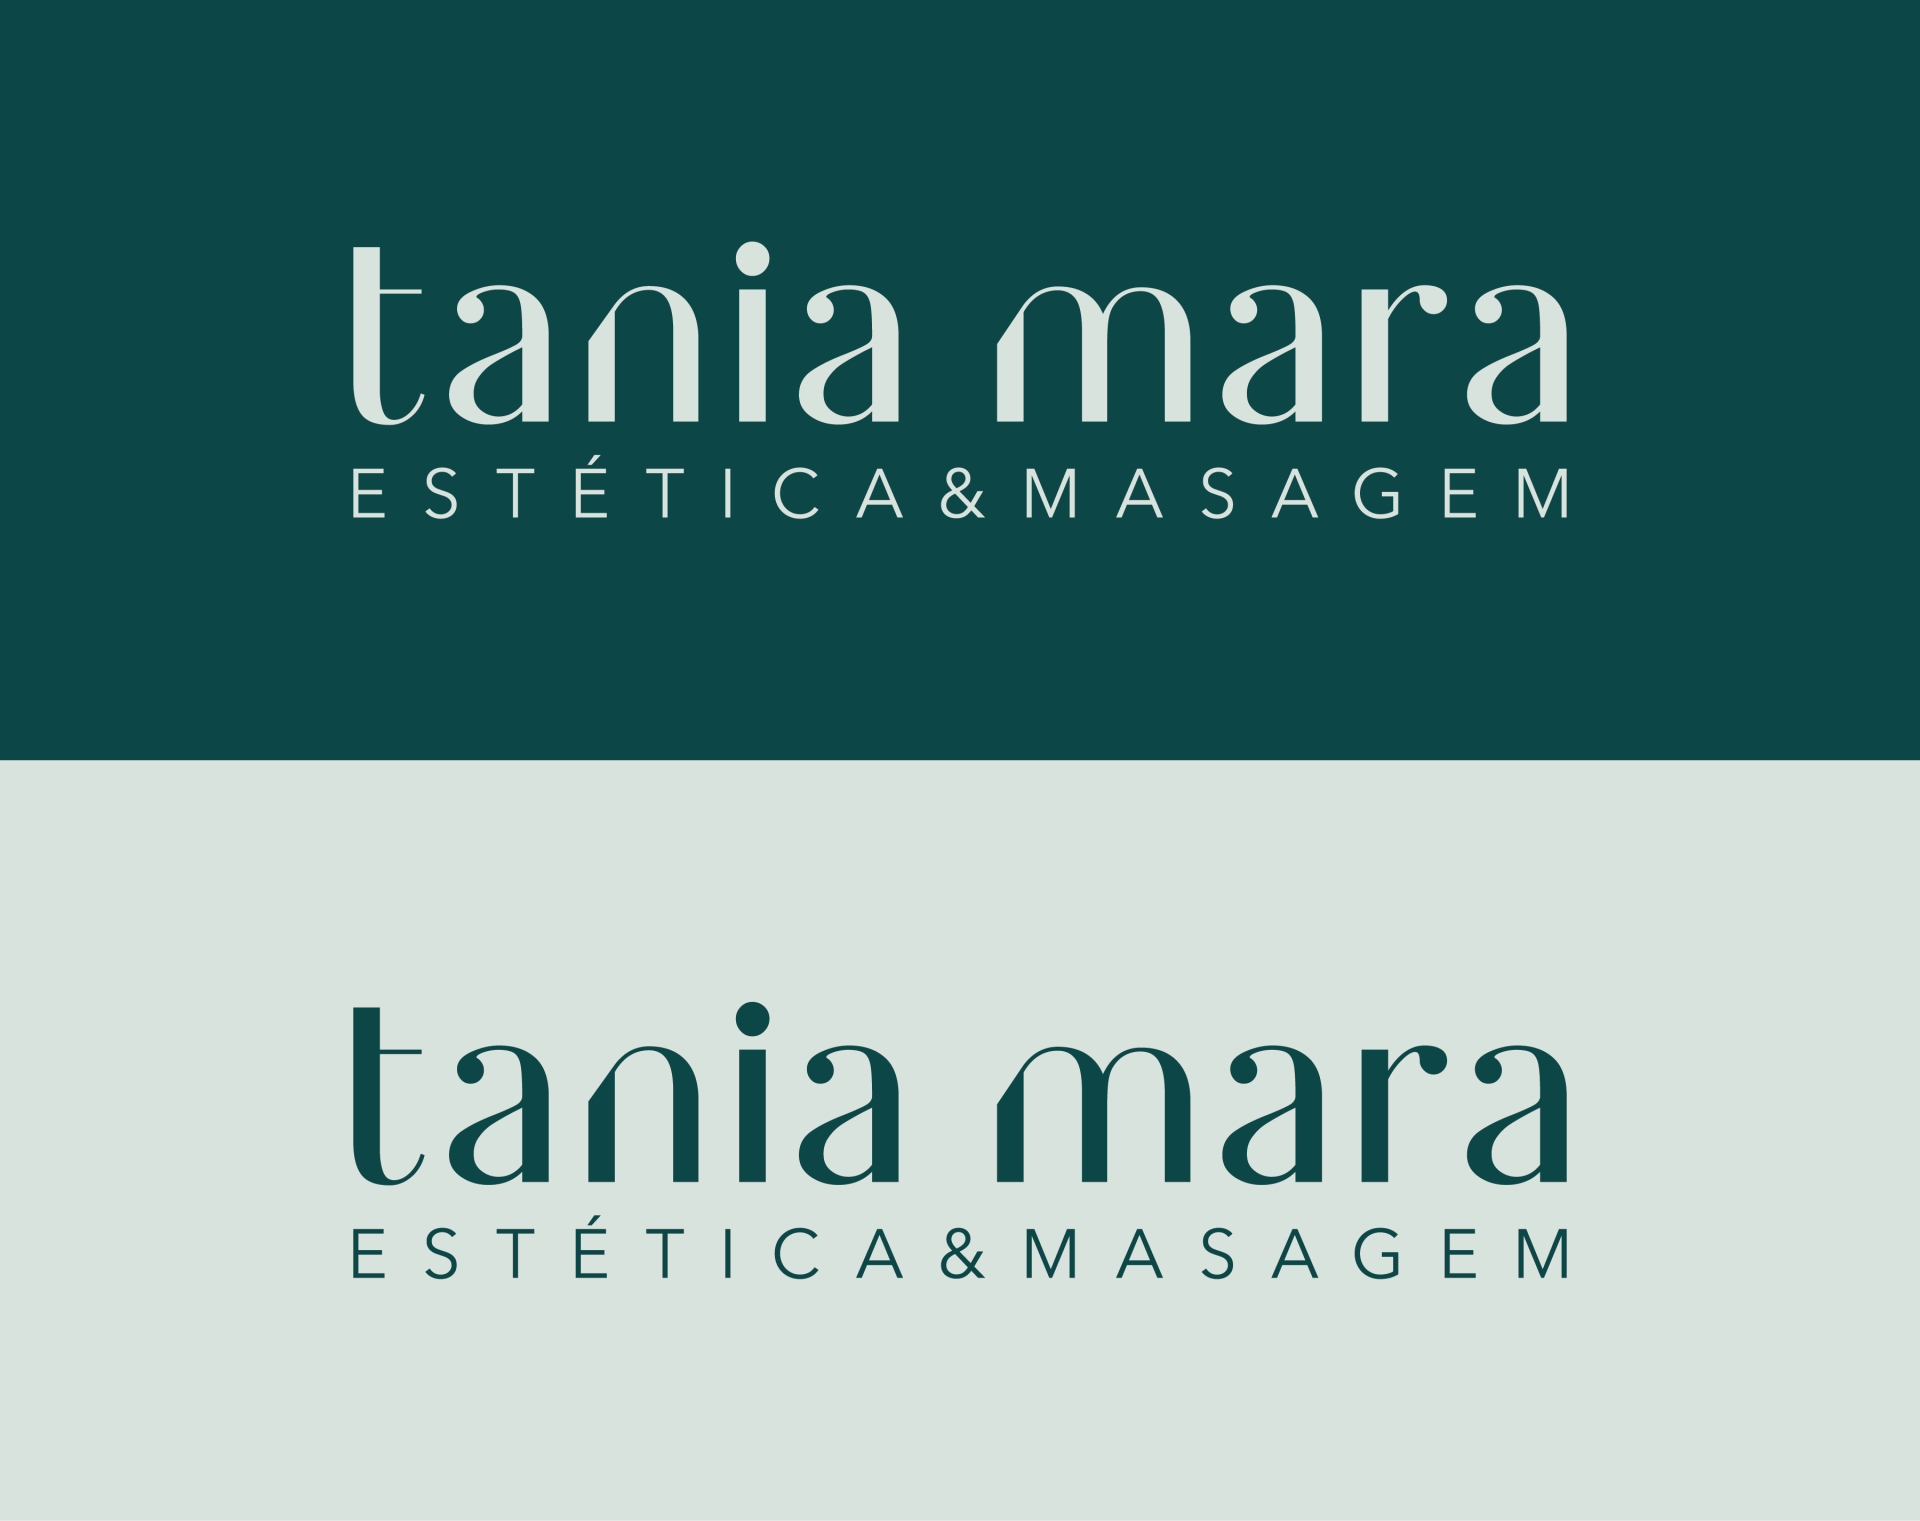 A nossa colaboração com Tania Mara permitiu-nos dar vida à sua marca de forma única e elegante, destacando-a no mercado com designs distintivos e uma identidade visual que representa fielmente a sua visão criativa.